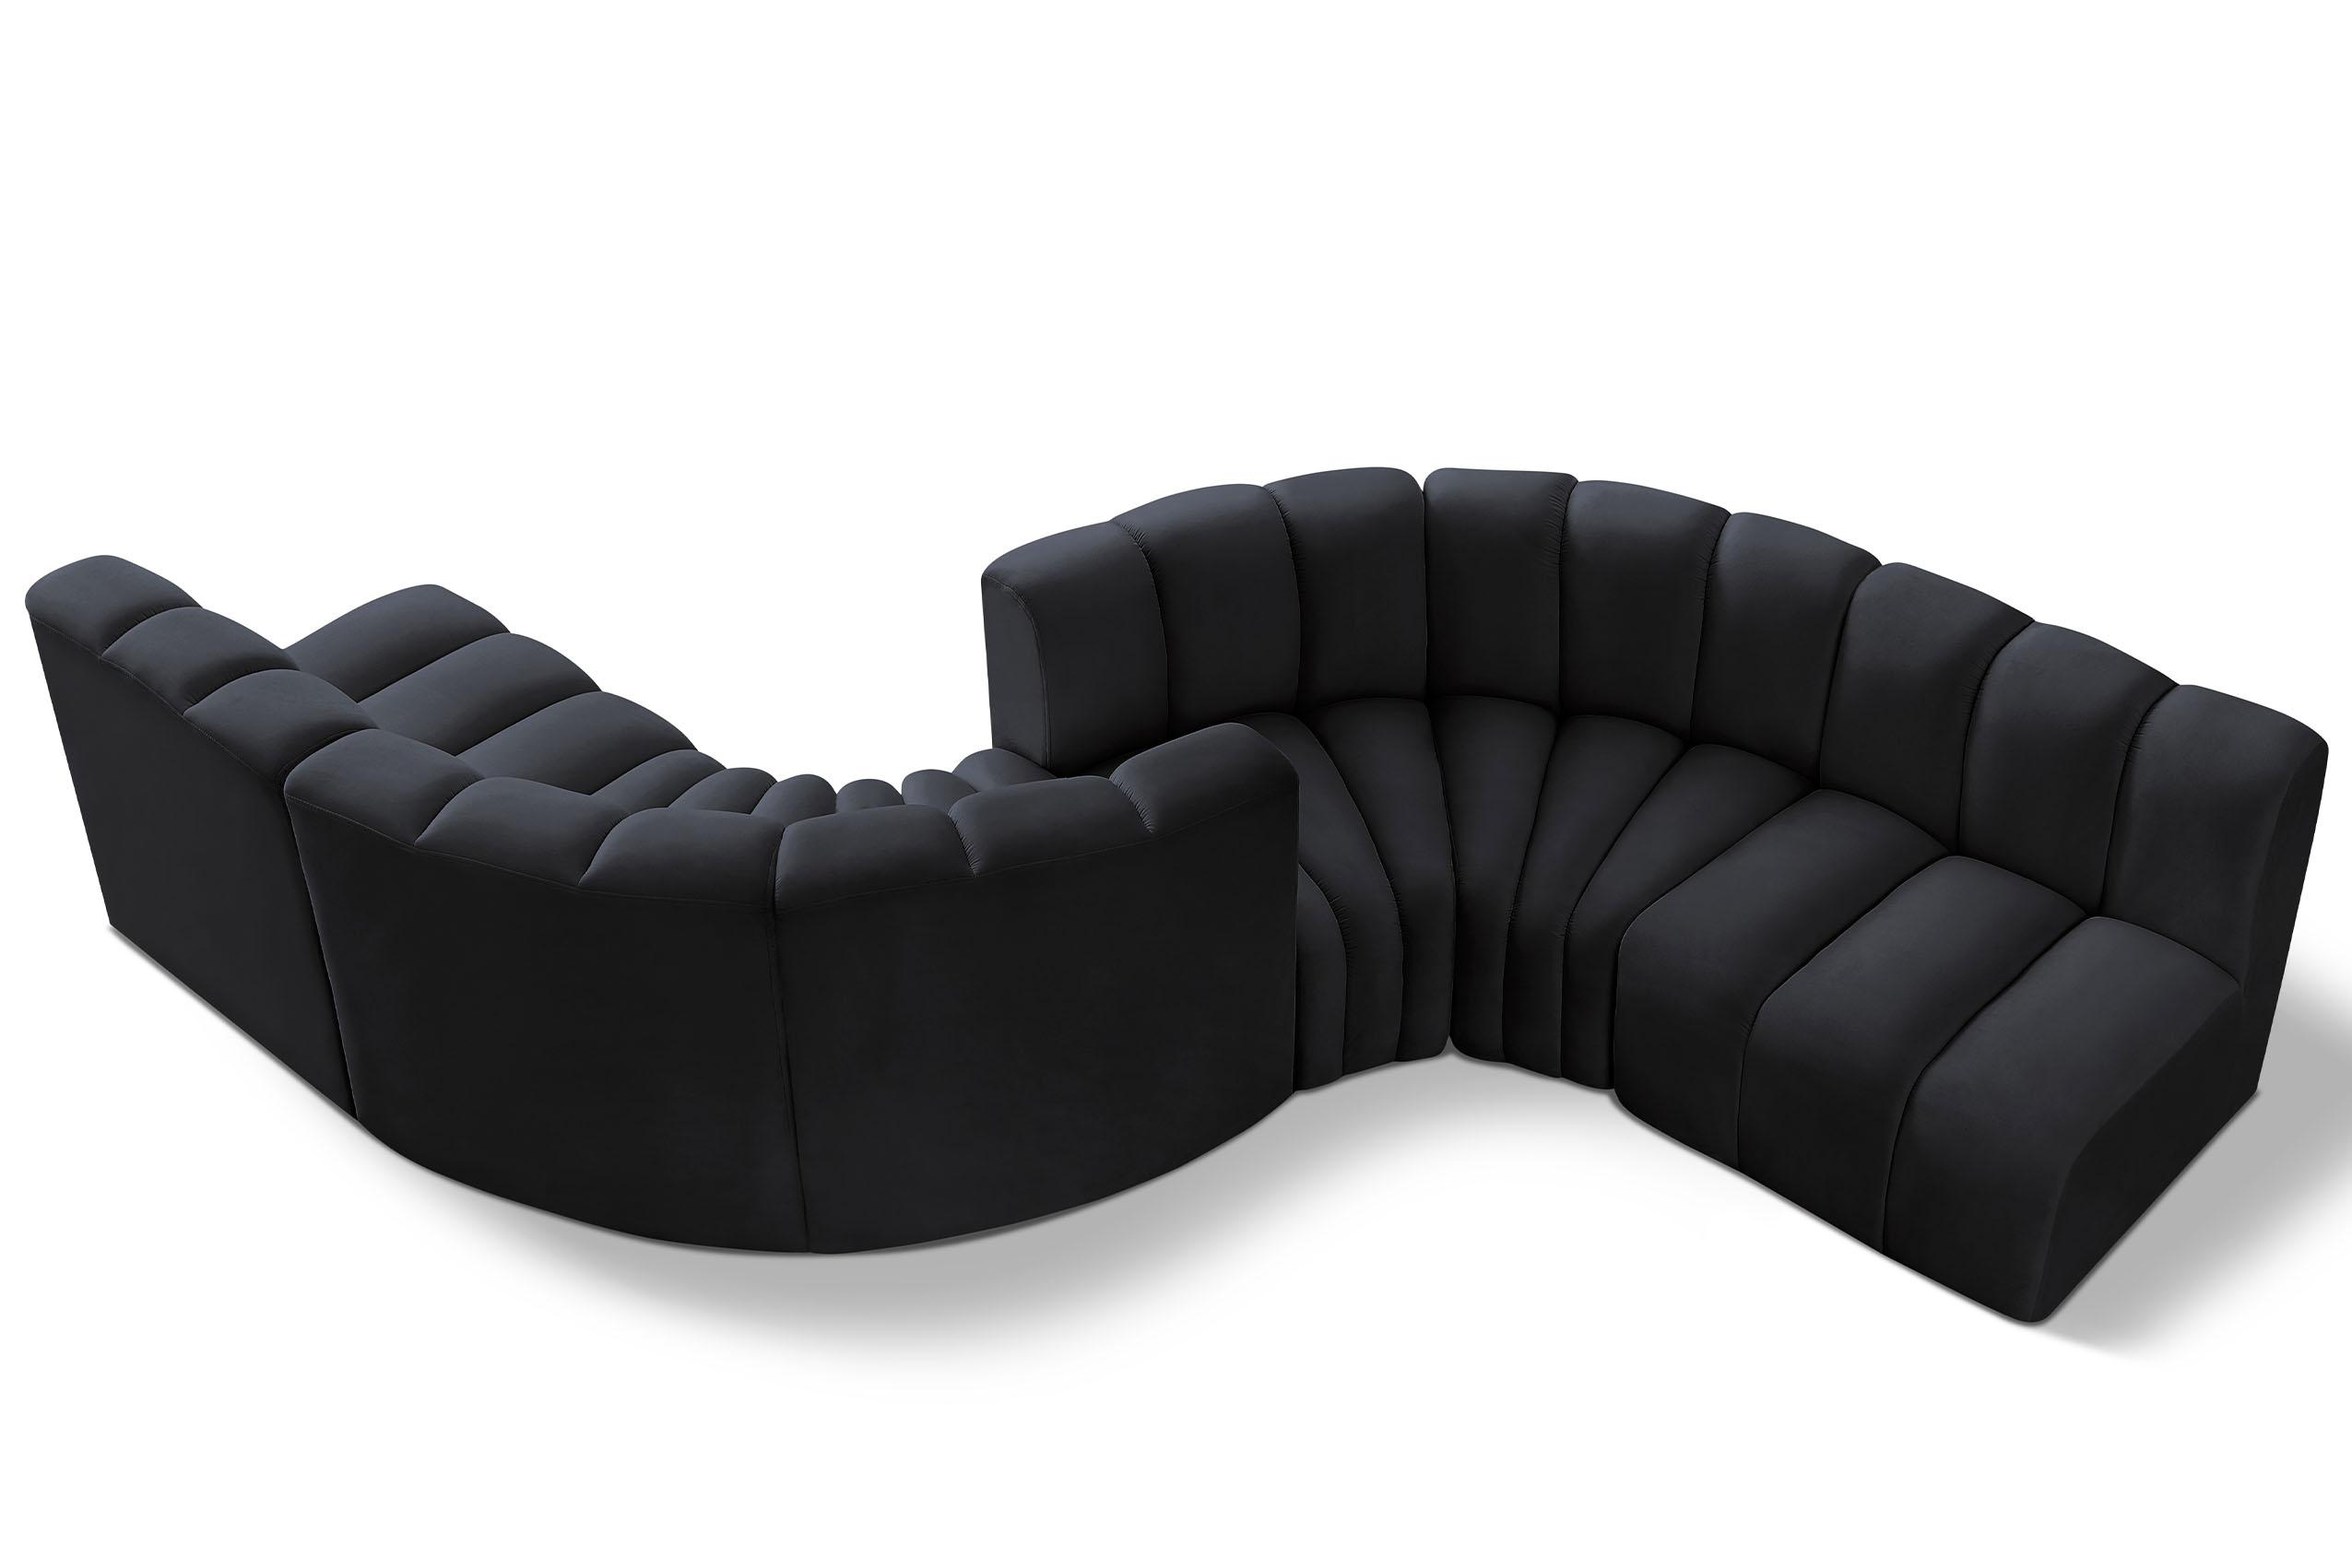 Contemporary, Modern Modular Sectional Sofa ARC 103Black-S6D 103Black-S6D in Black Velvet